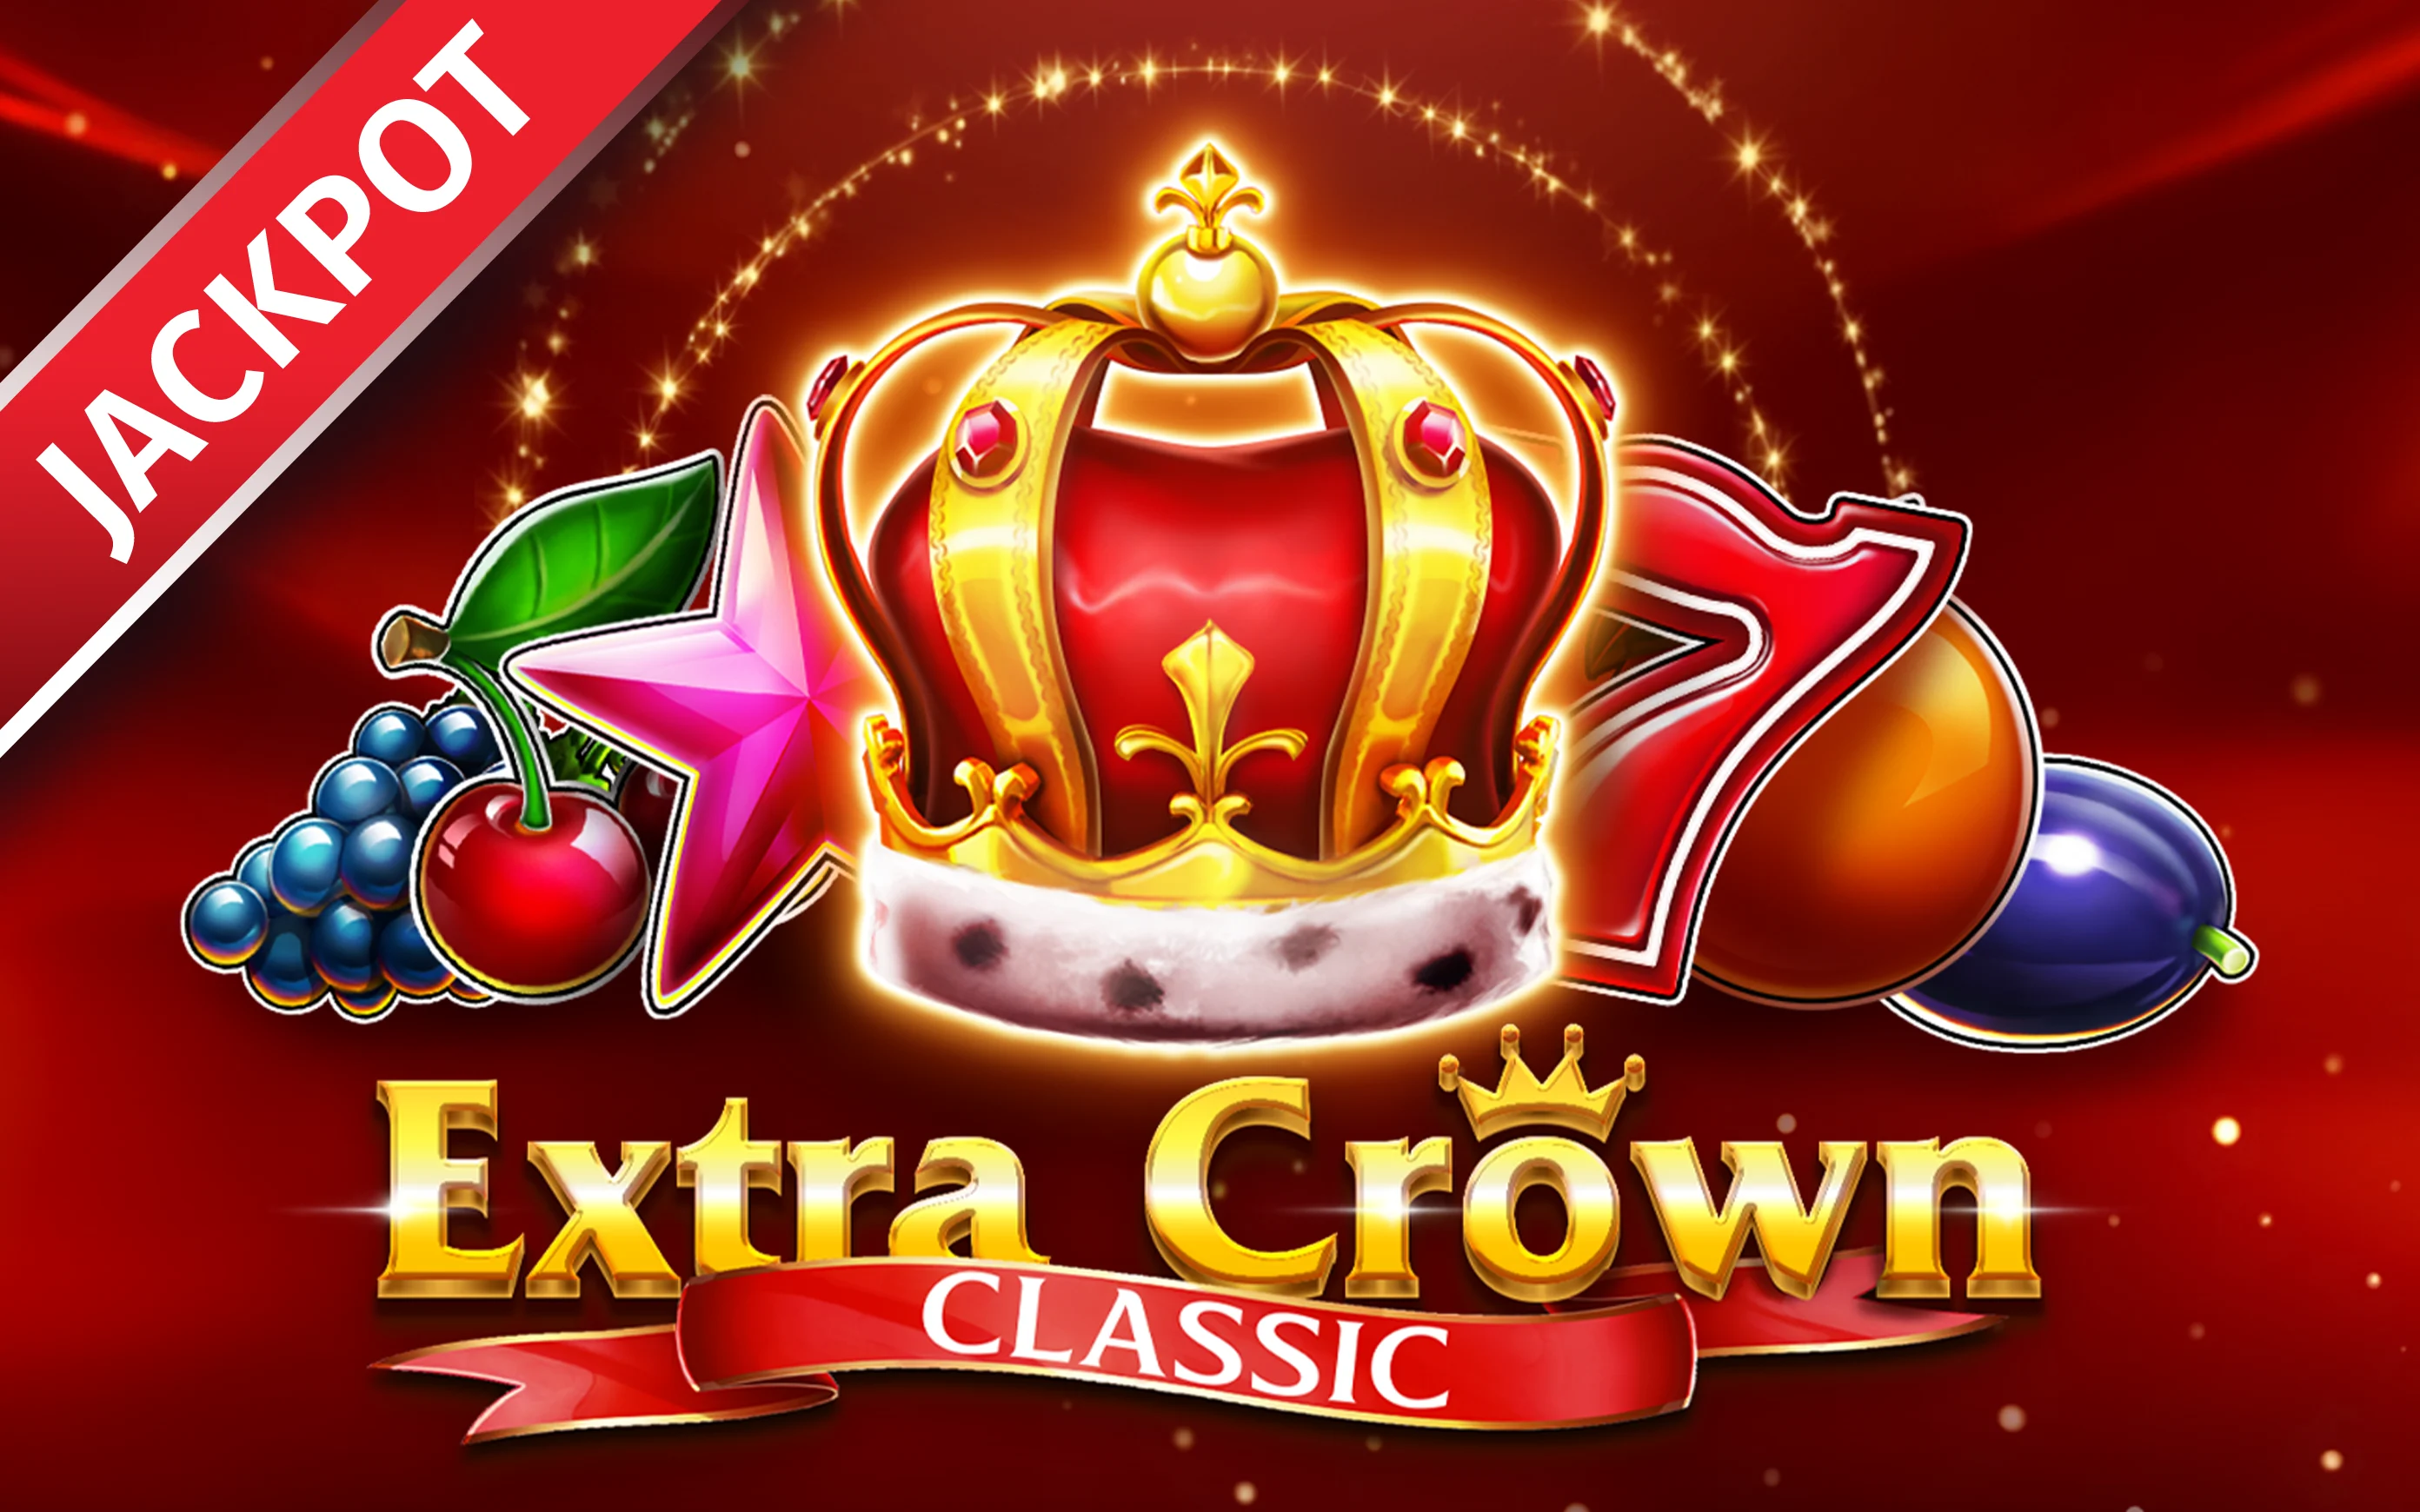 Jouer à Extra Crown Classic sur le casino en ligne Starcasino.be